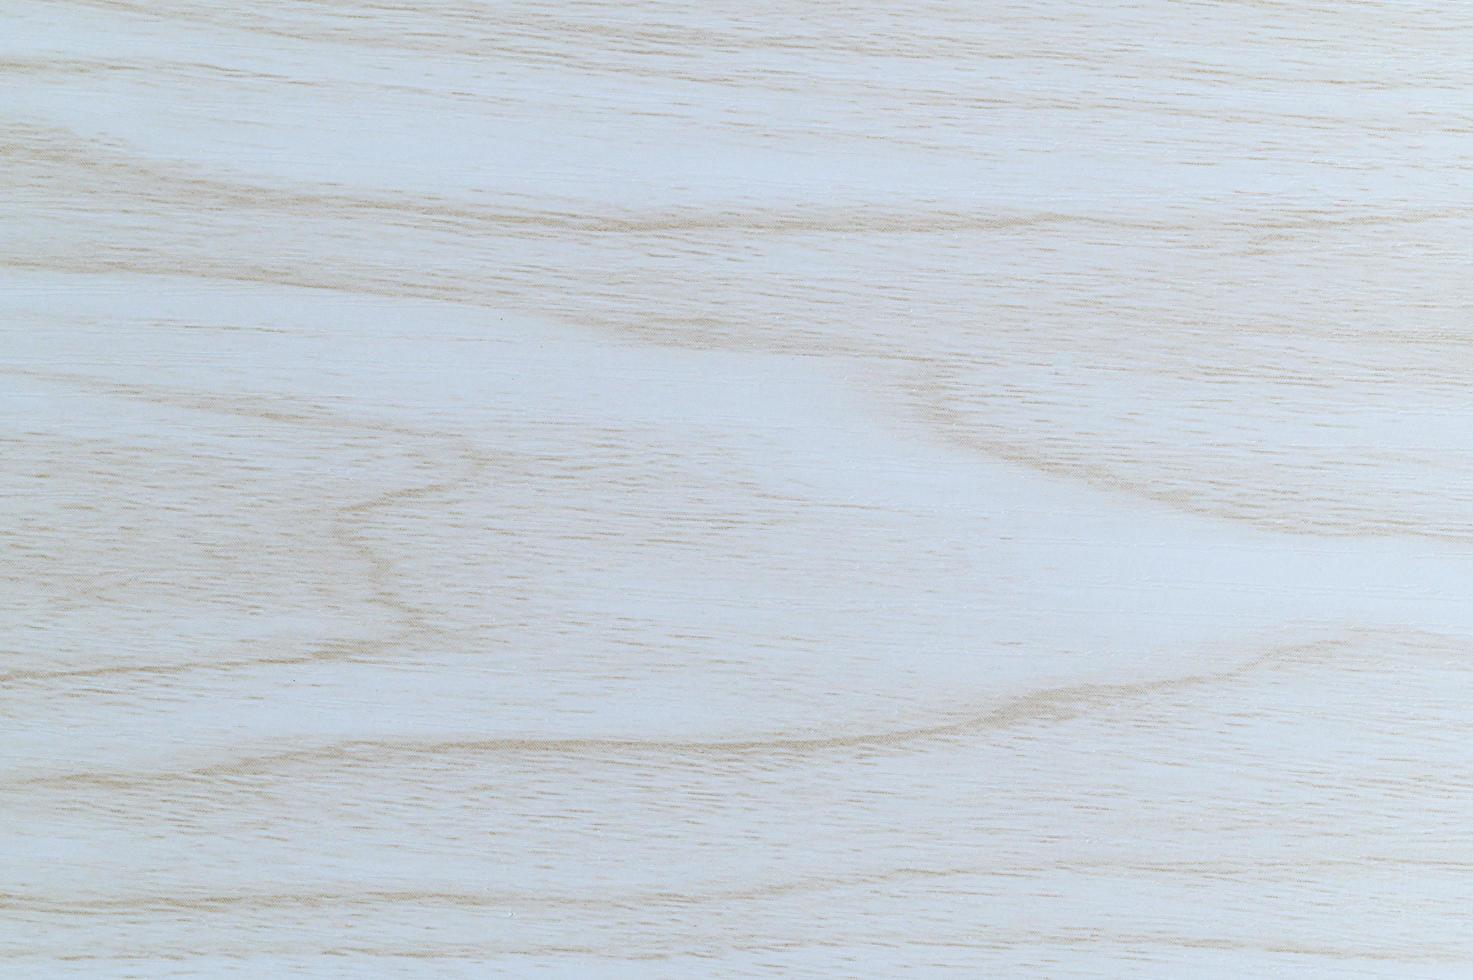 pavimento in legno marrone chiaro e bianco foto